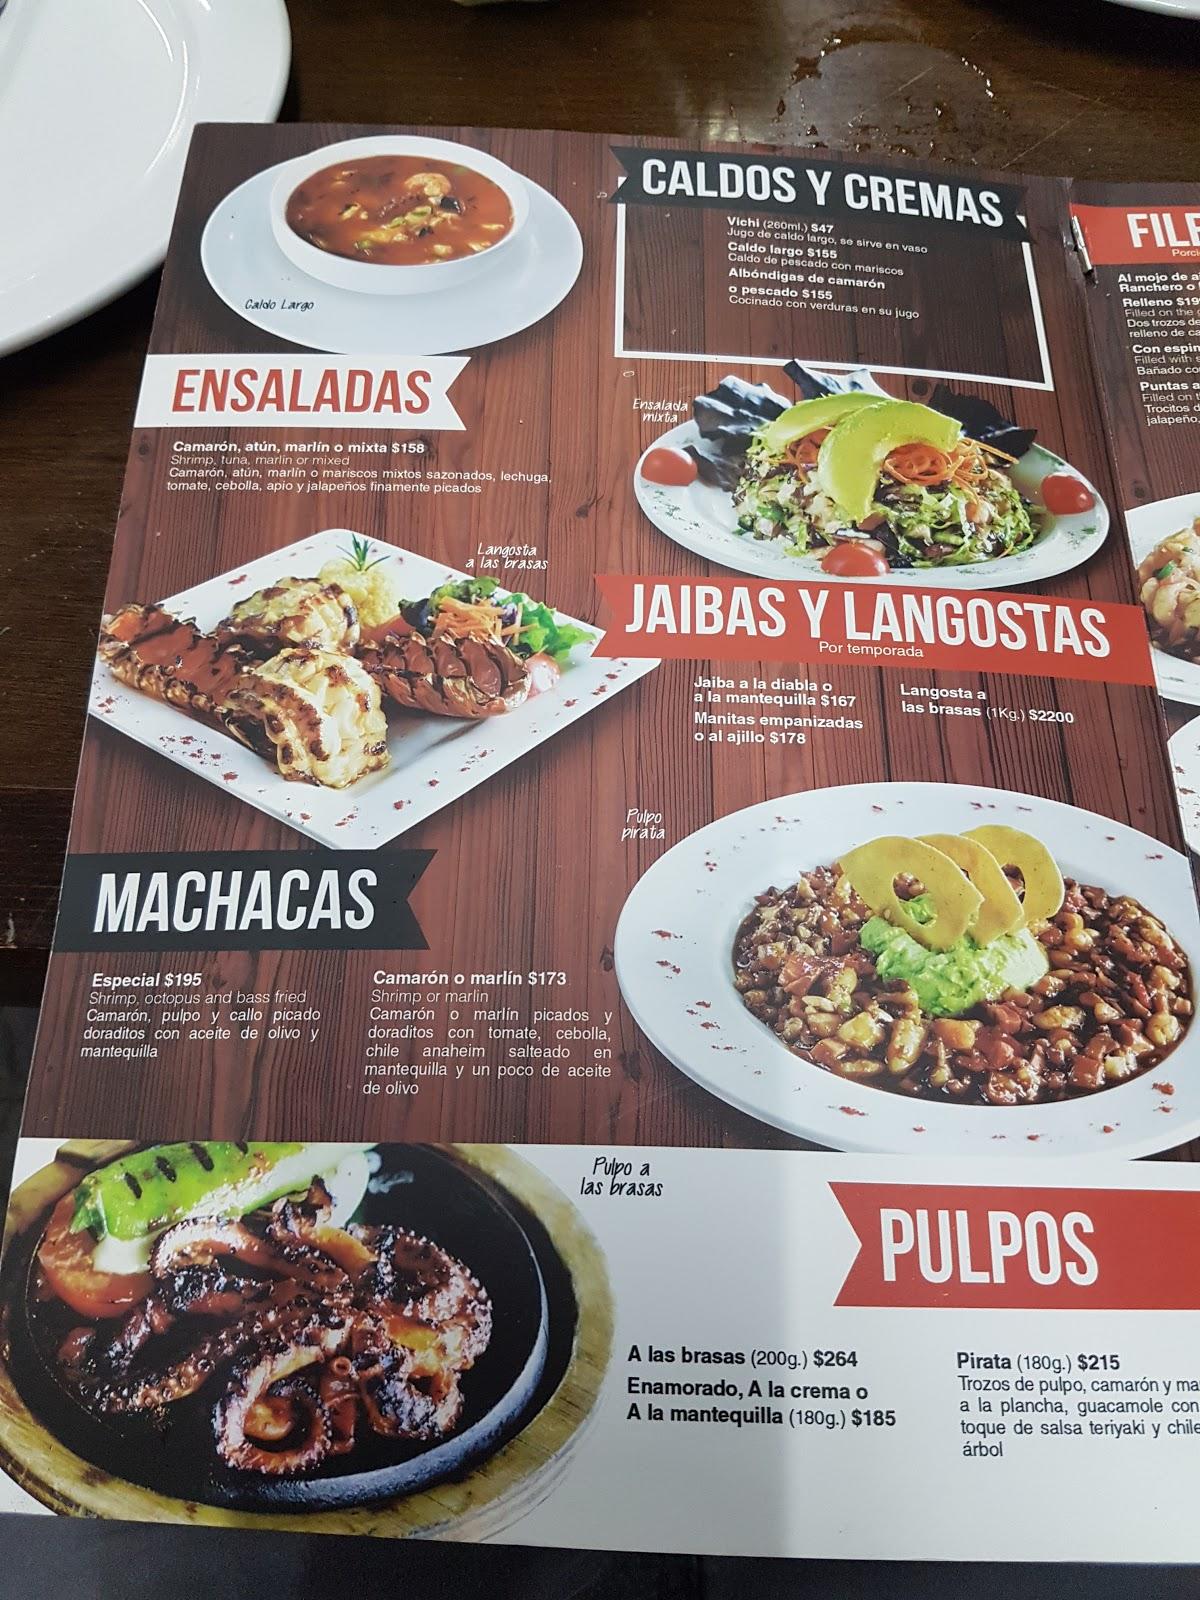 Menu at Los Arbolitos de Cajeme restaurant, Hermosillo, Blvd. Solidaridad  201